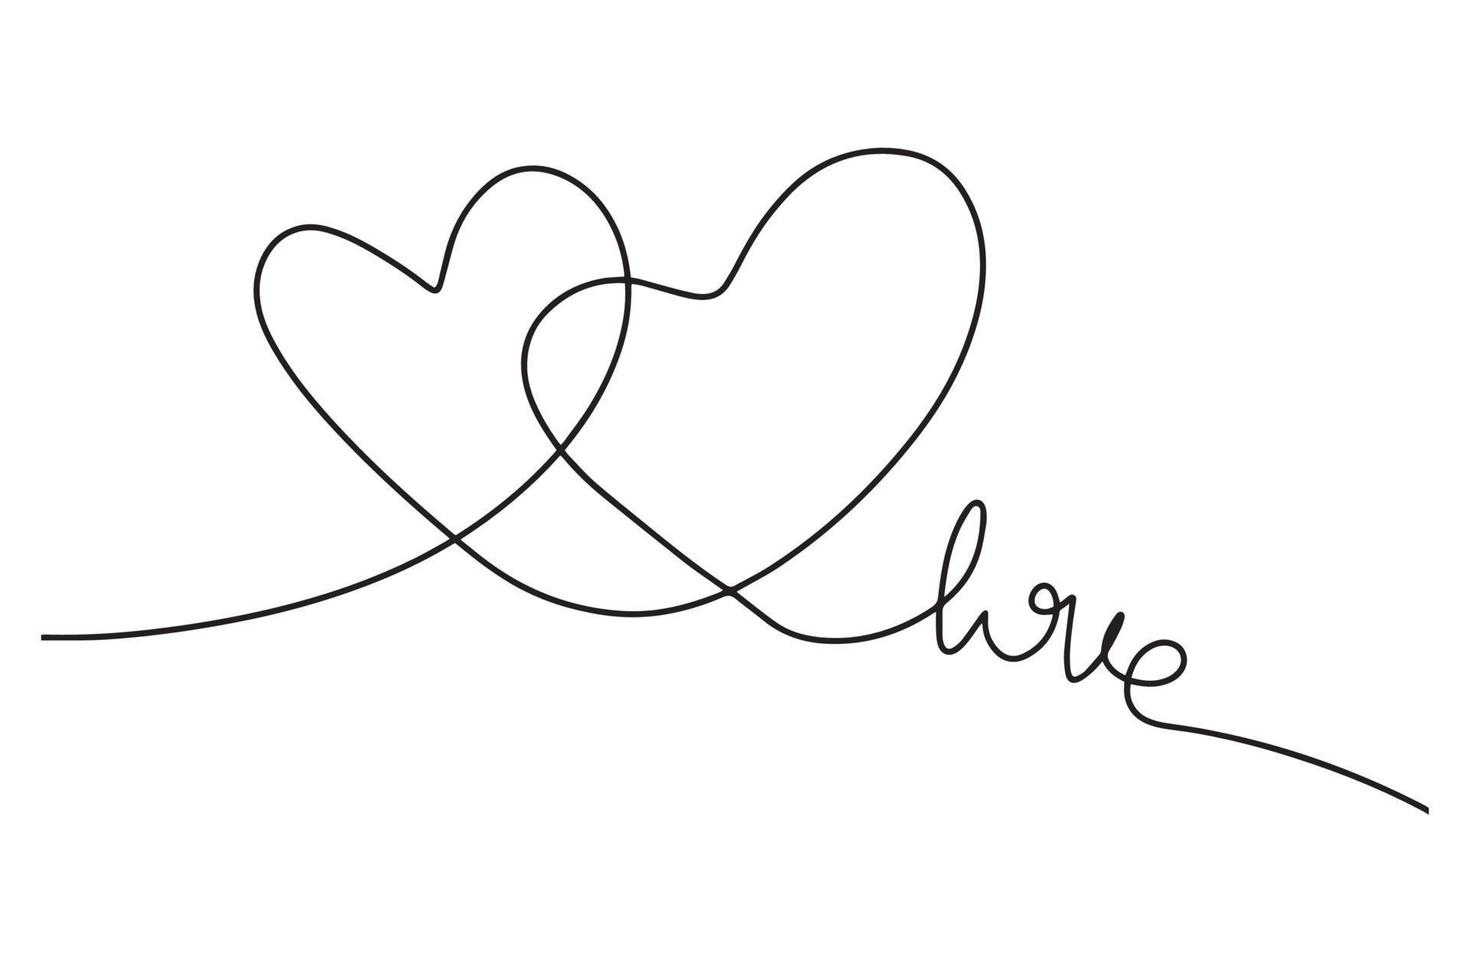 desenho contínuo de um par de corações e a inscrição amor. ilustração minimalista da moda. desenho em uma linha. vetor